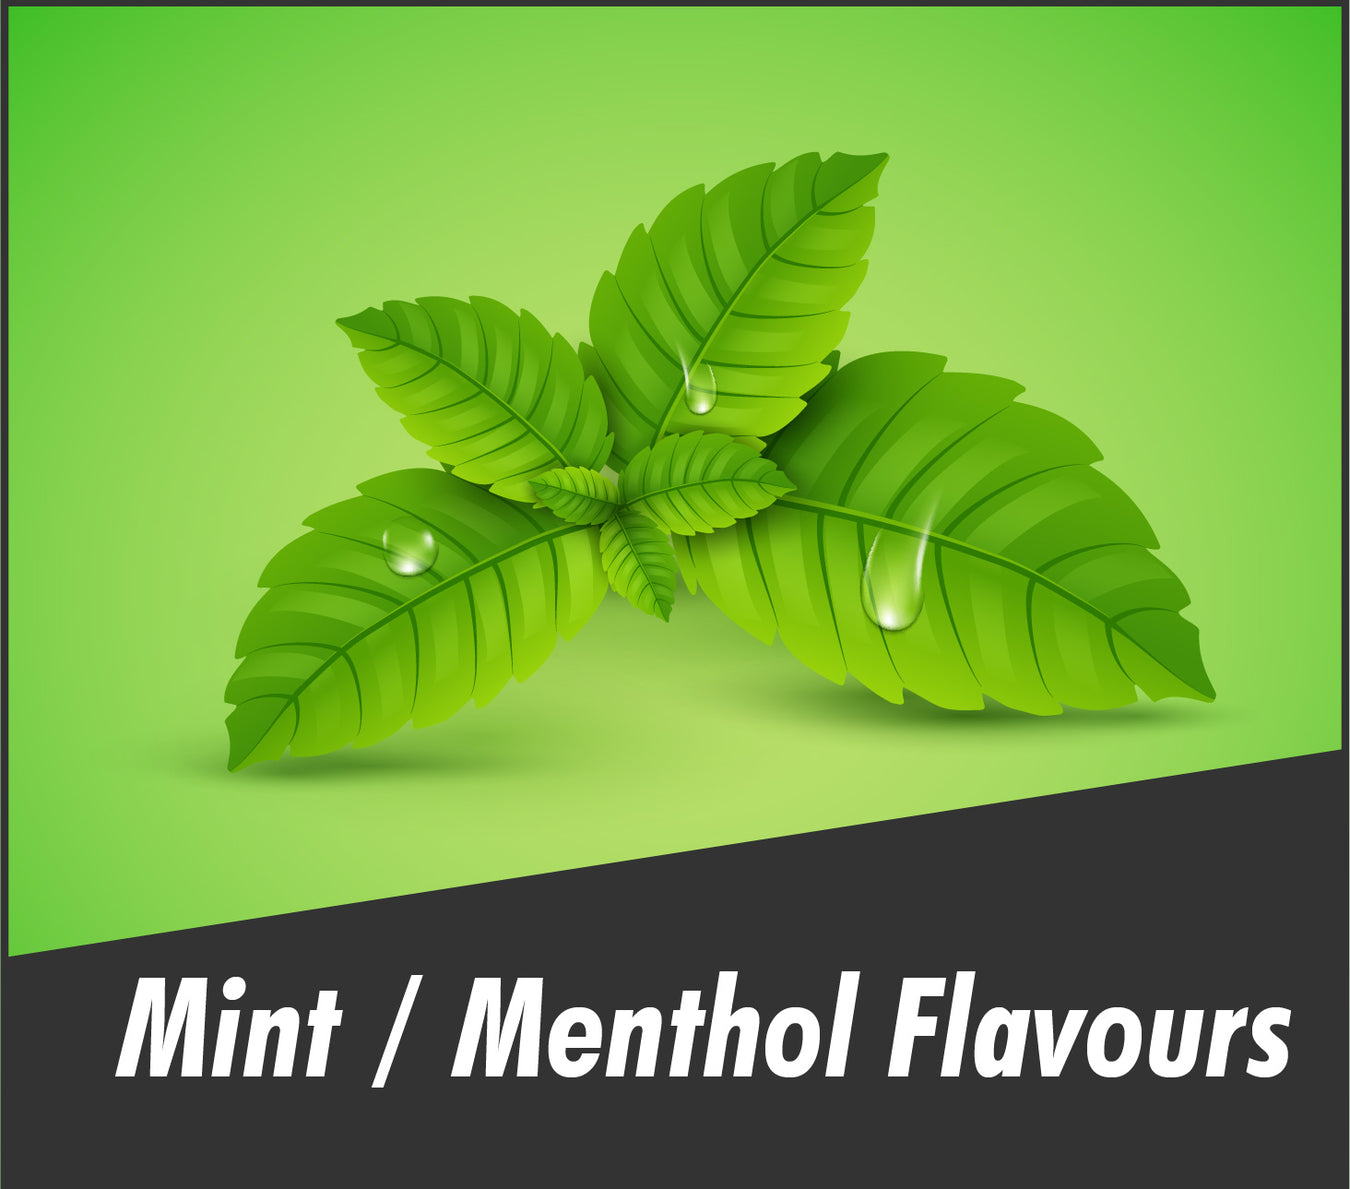 Mint / Menthol Flavours